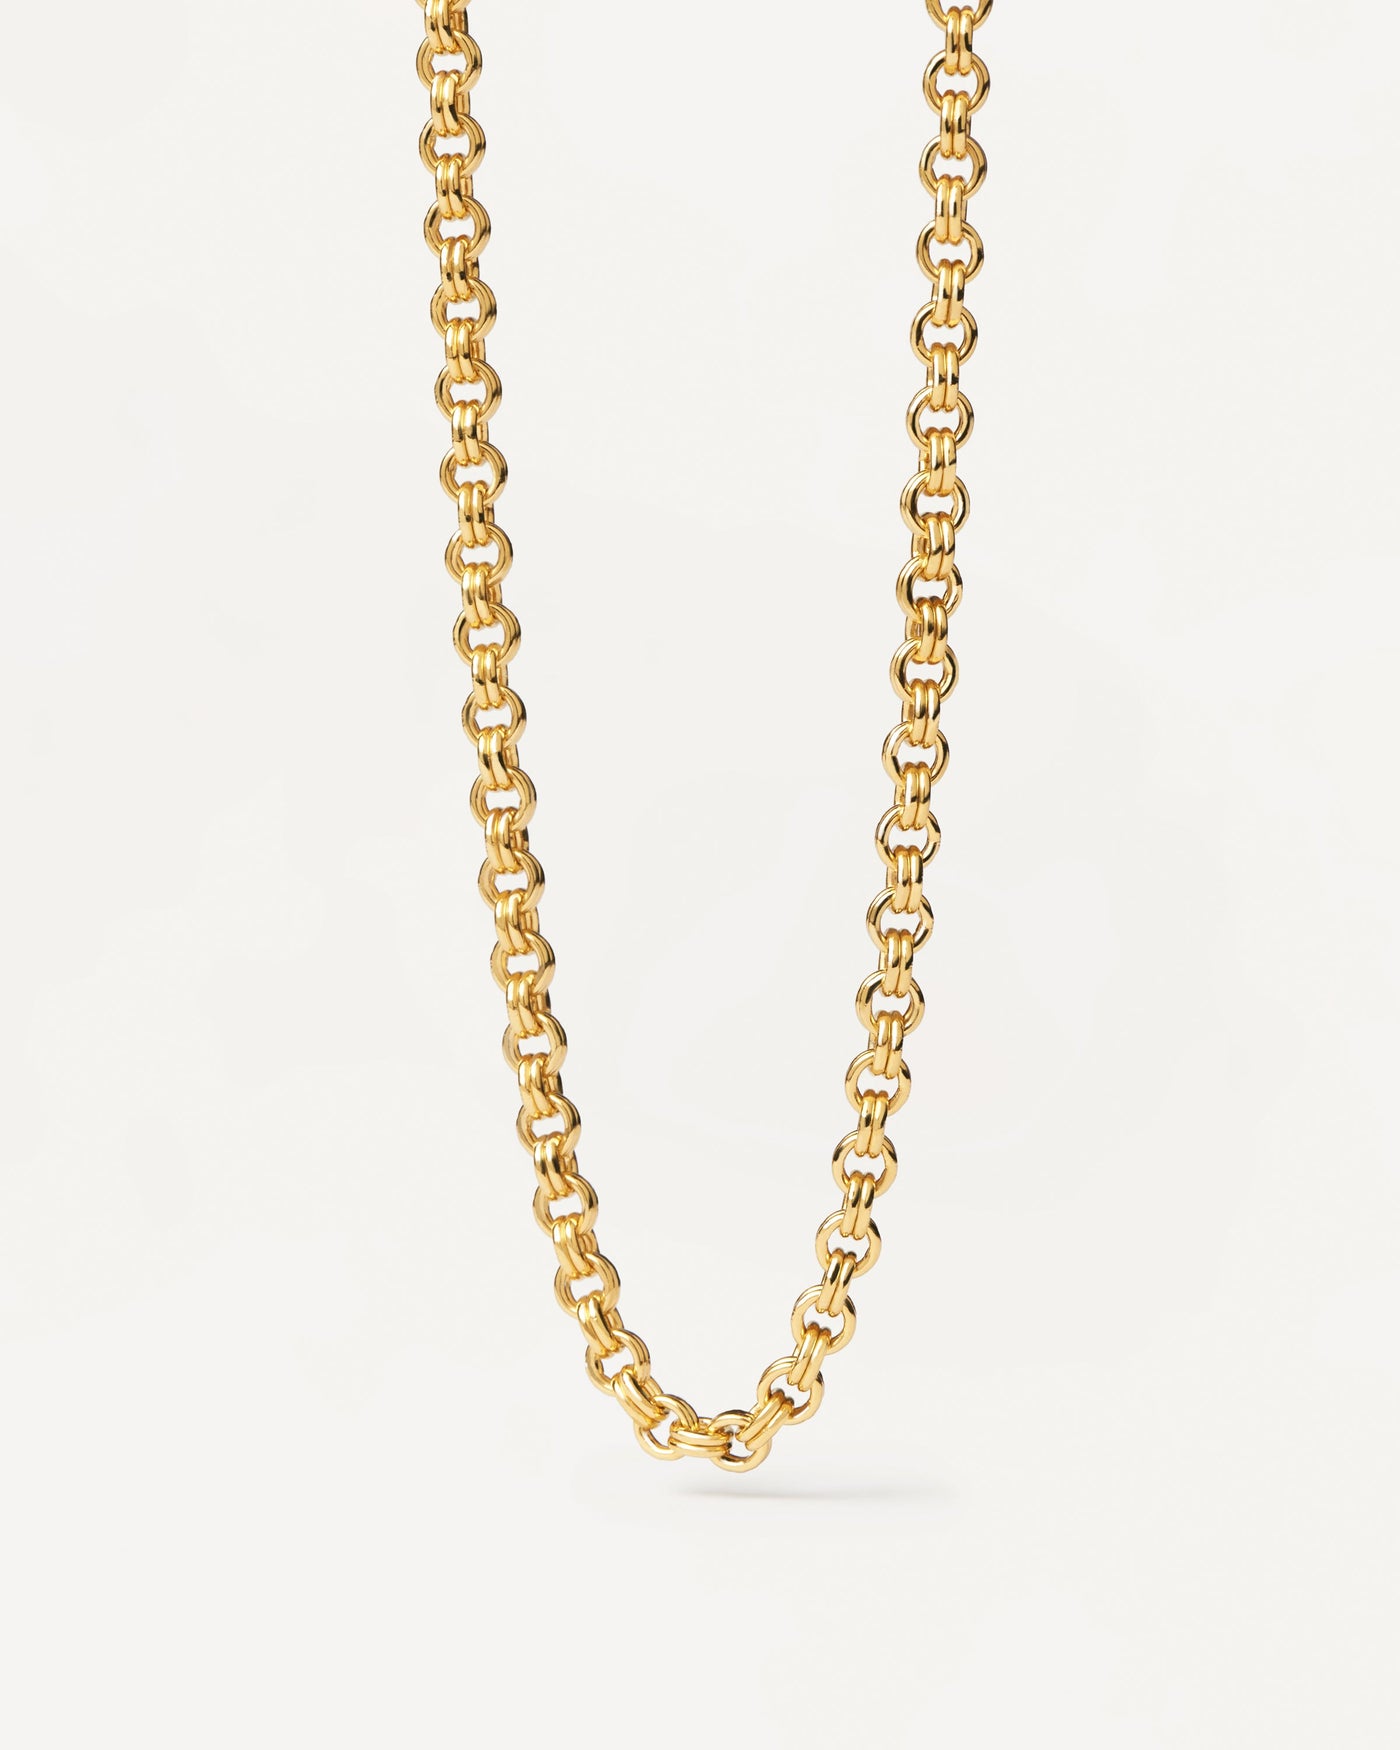 Collar Neo. Collar cadena de plata bañado en oro con eslabones dobles. Consigue las últimas novedades de PDPAOLA. Haz tu pedido de forma segura y obtén este Best Seller.